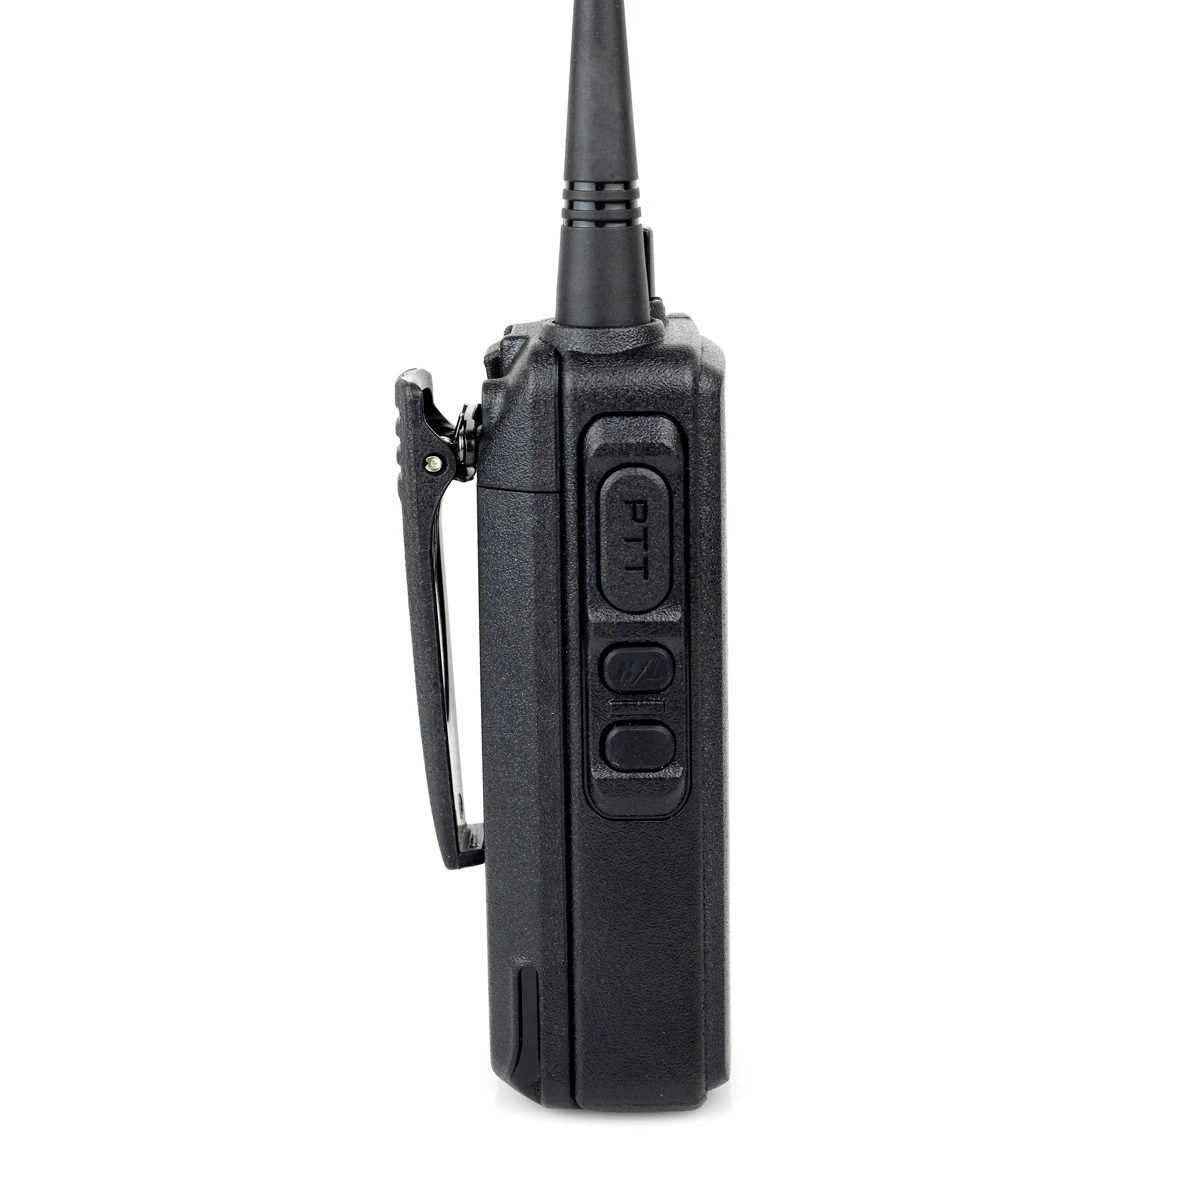 Высокая мощность 10 Вт Профессиональная рация Retevis RT1 VHF (или UHF) VOX 3000 мАч две - Фото №1